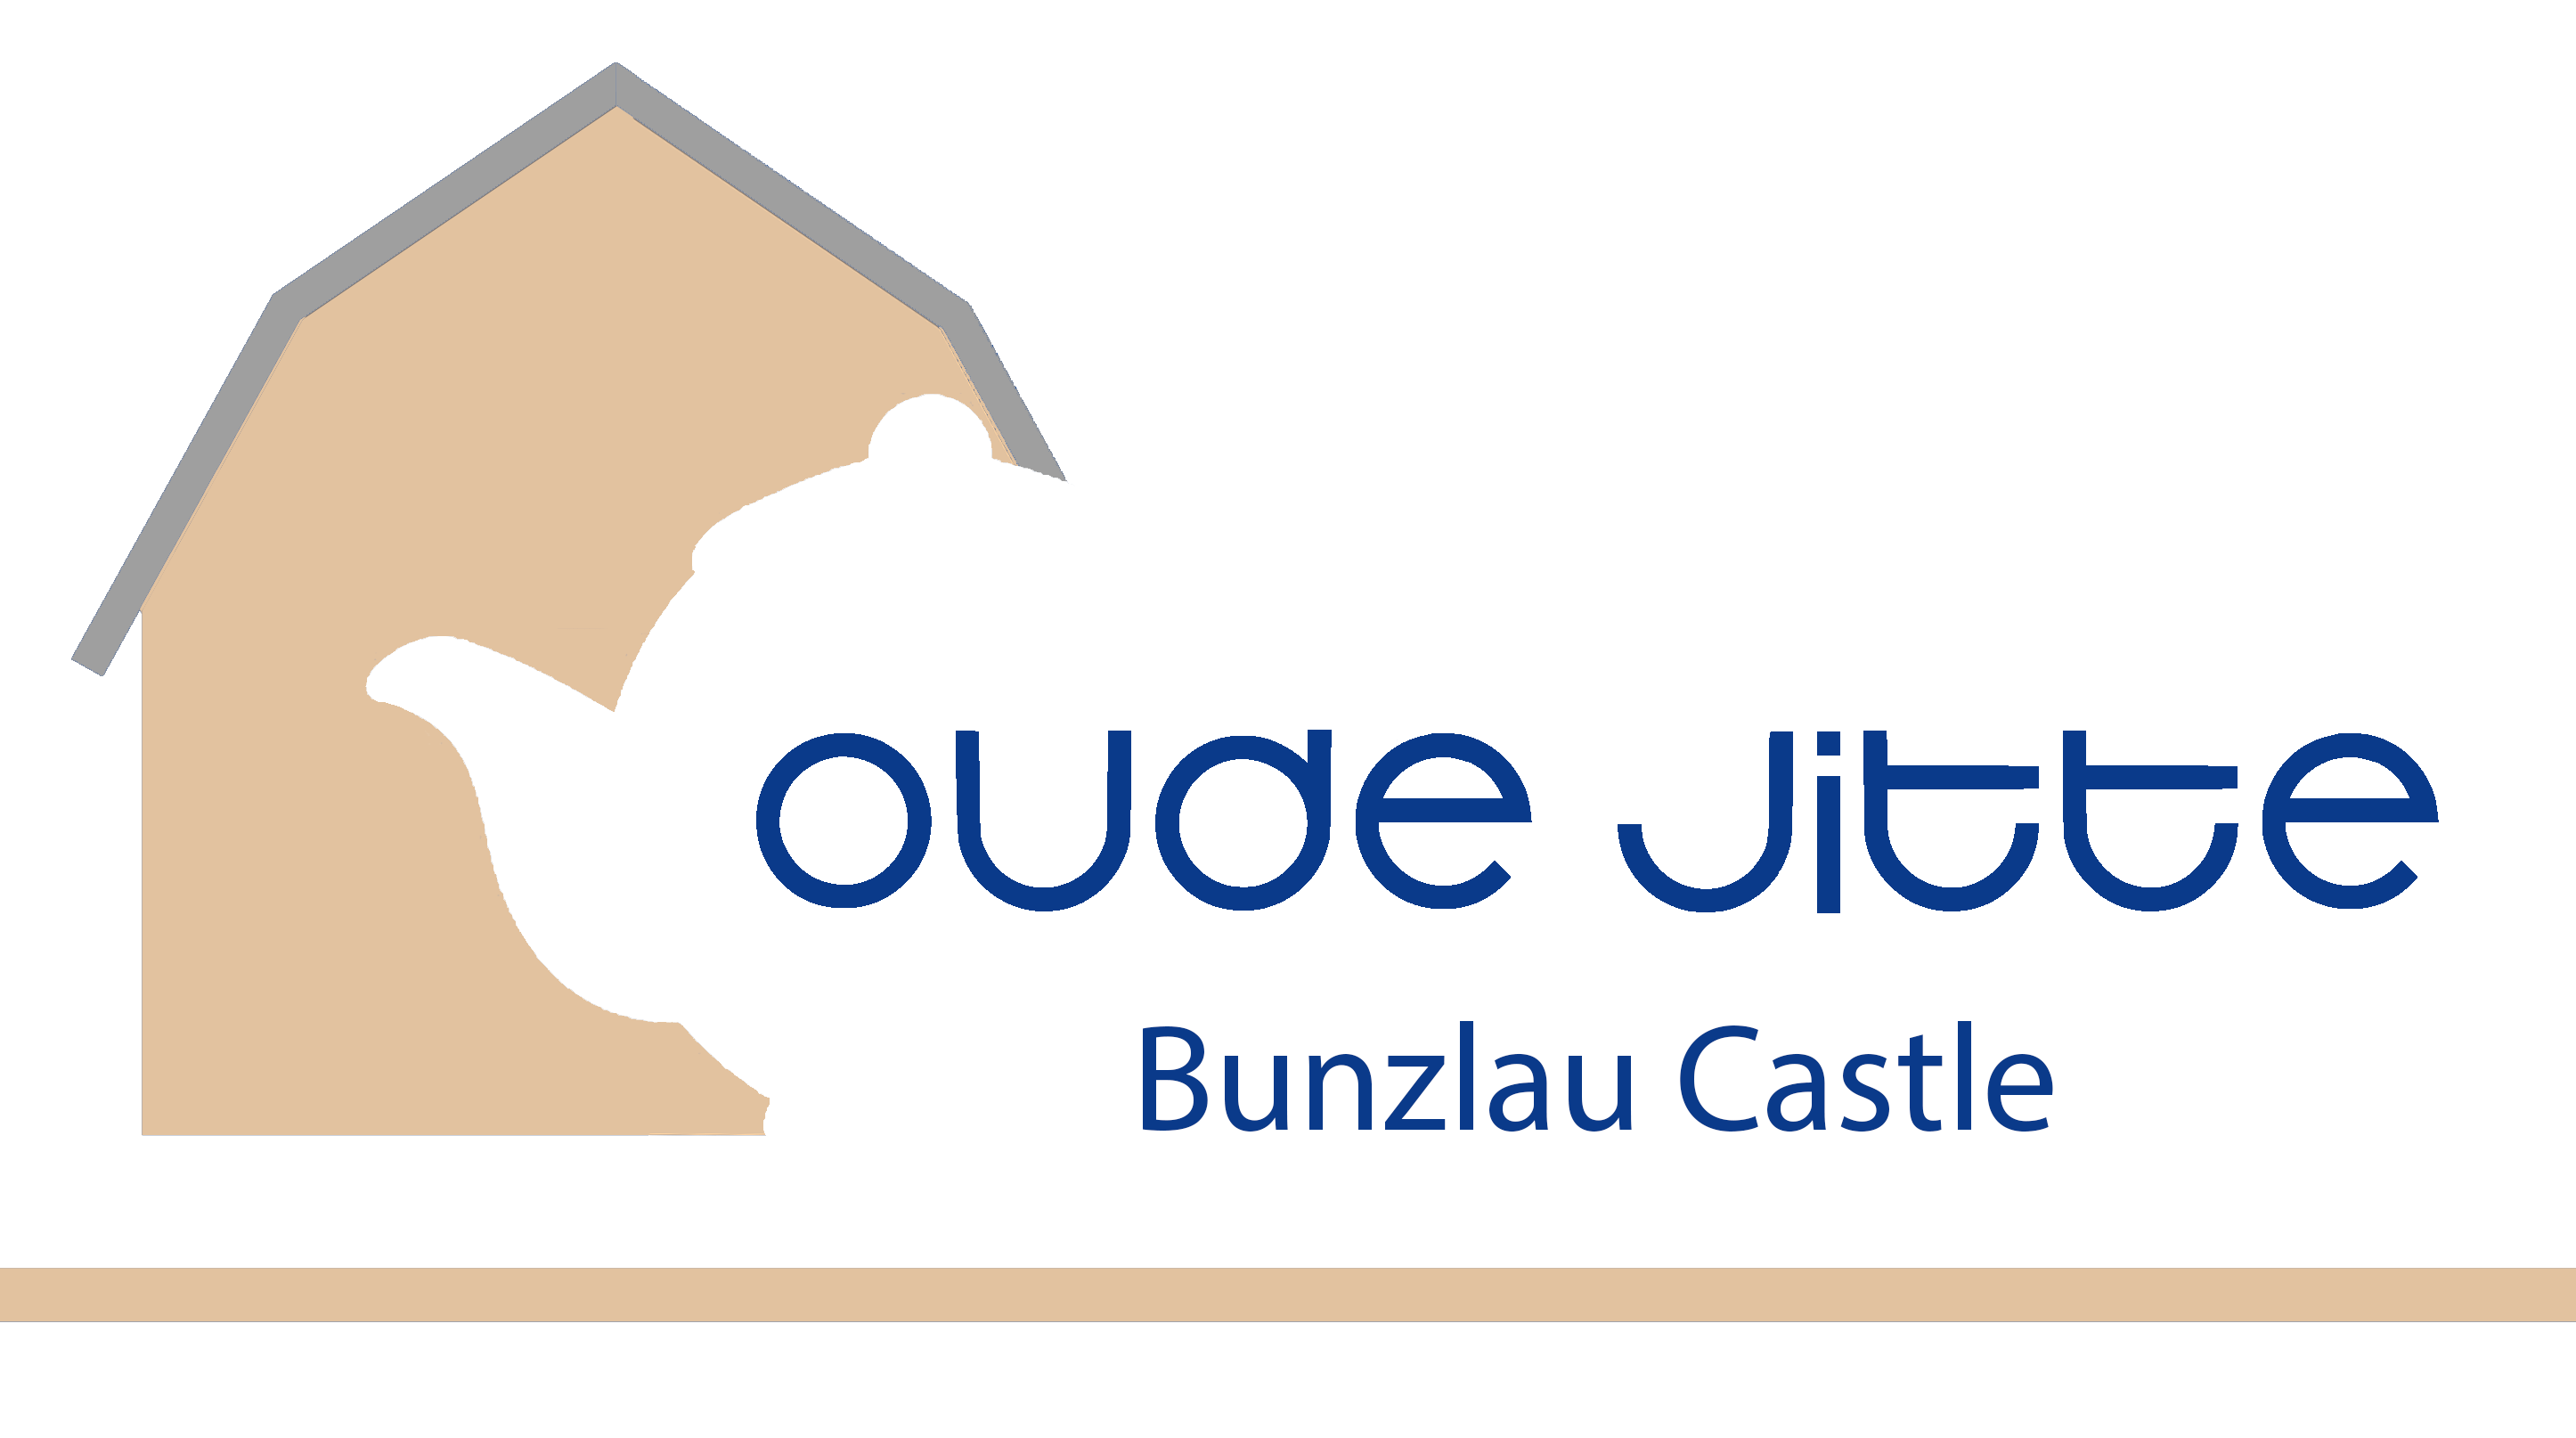 Bunzlau Castle Blik, Onderzetters & Stationery